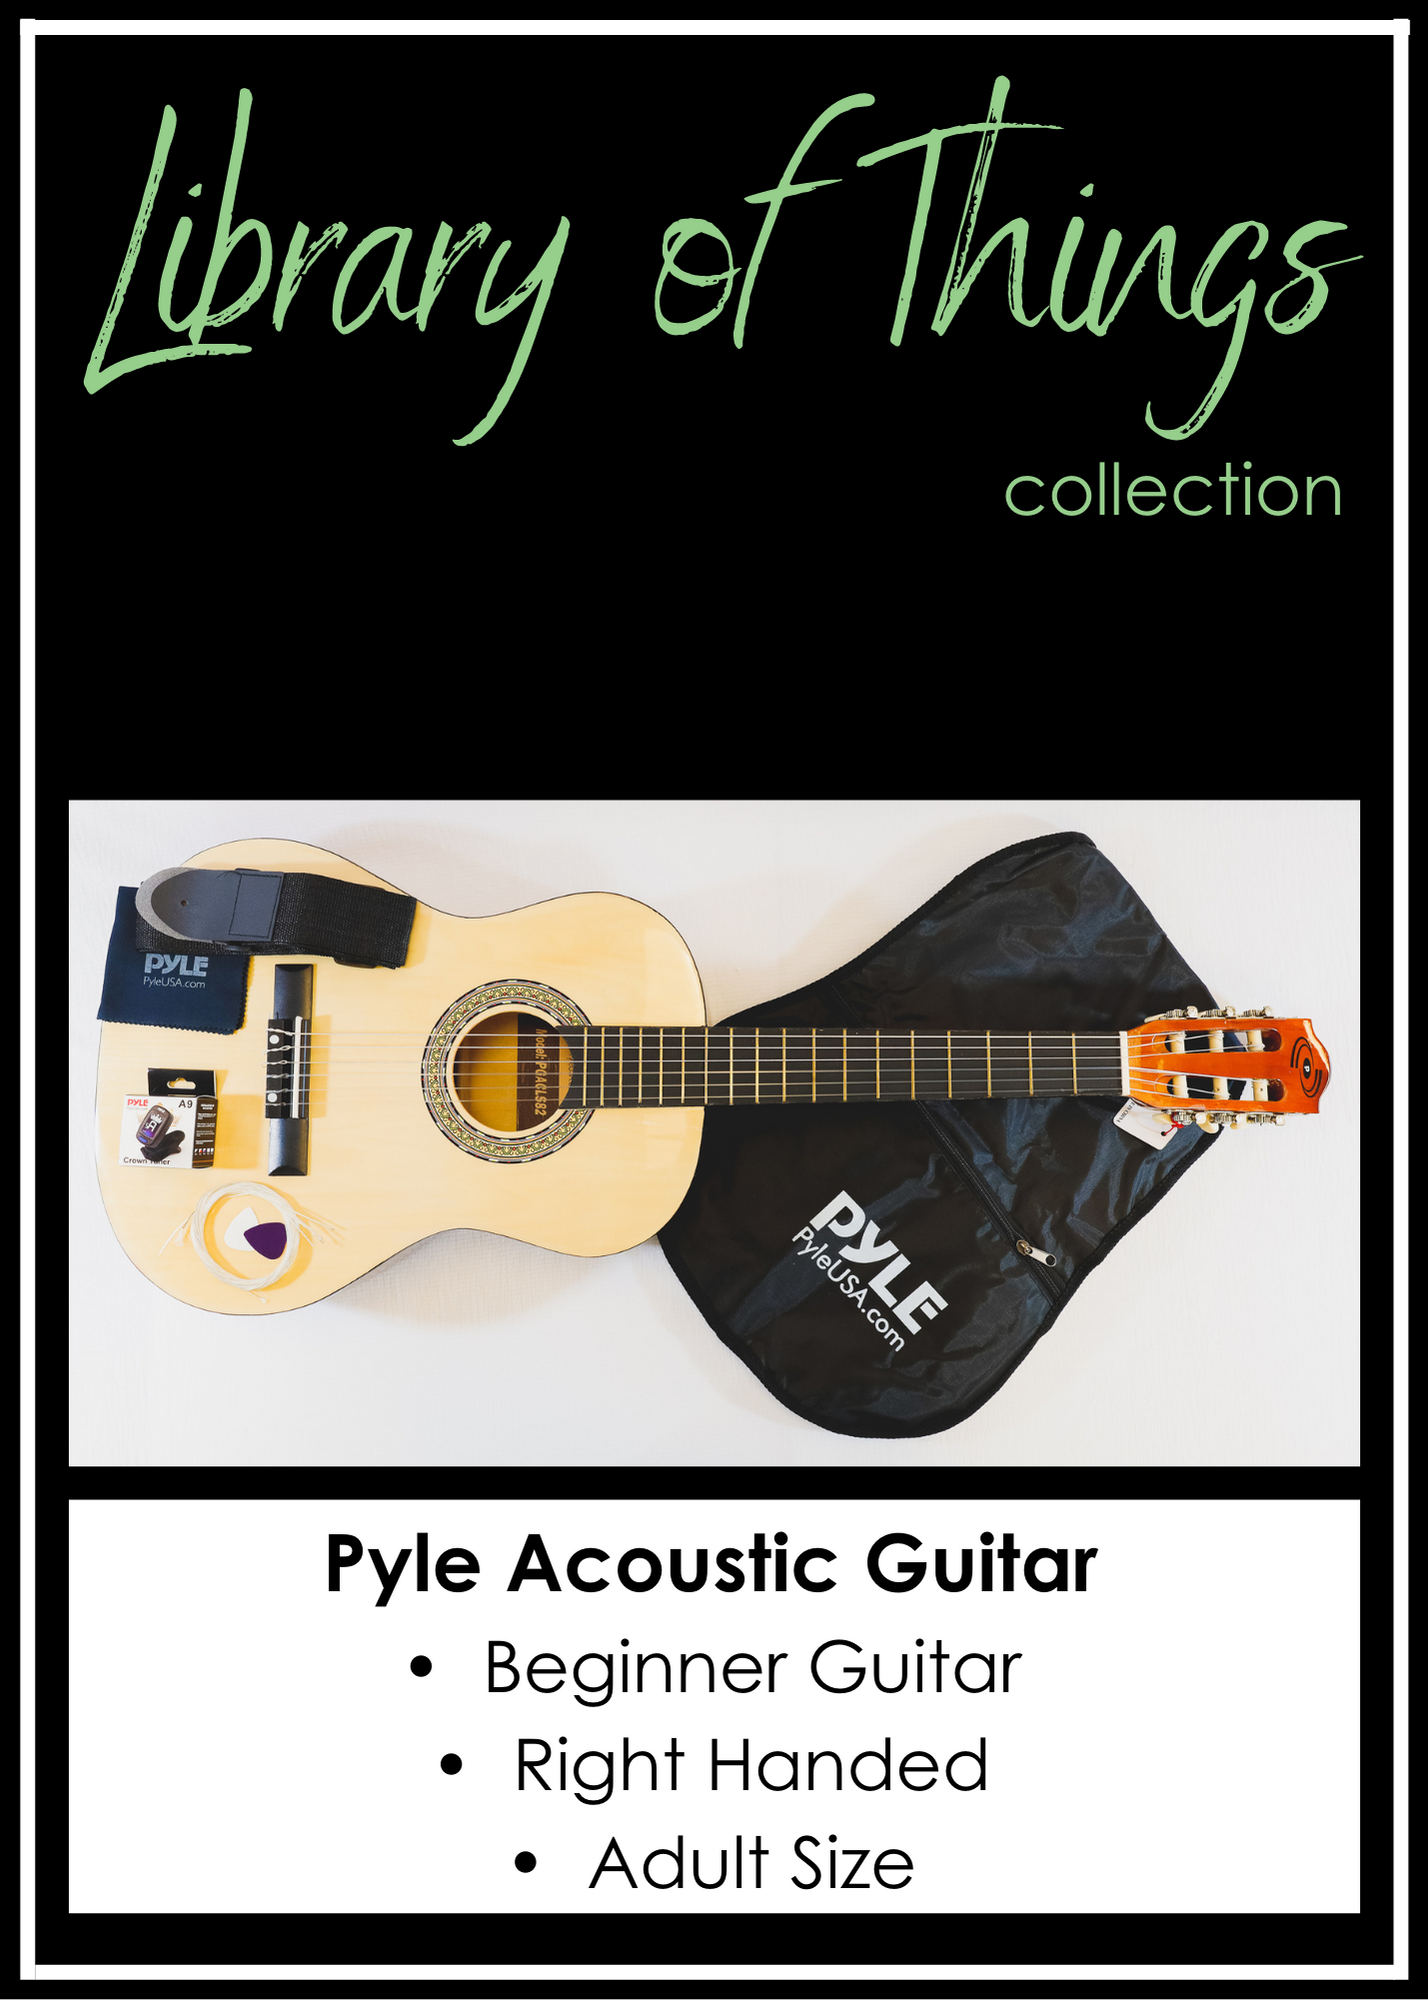 Pyle Acoustic Guitar